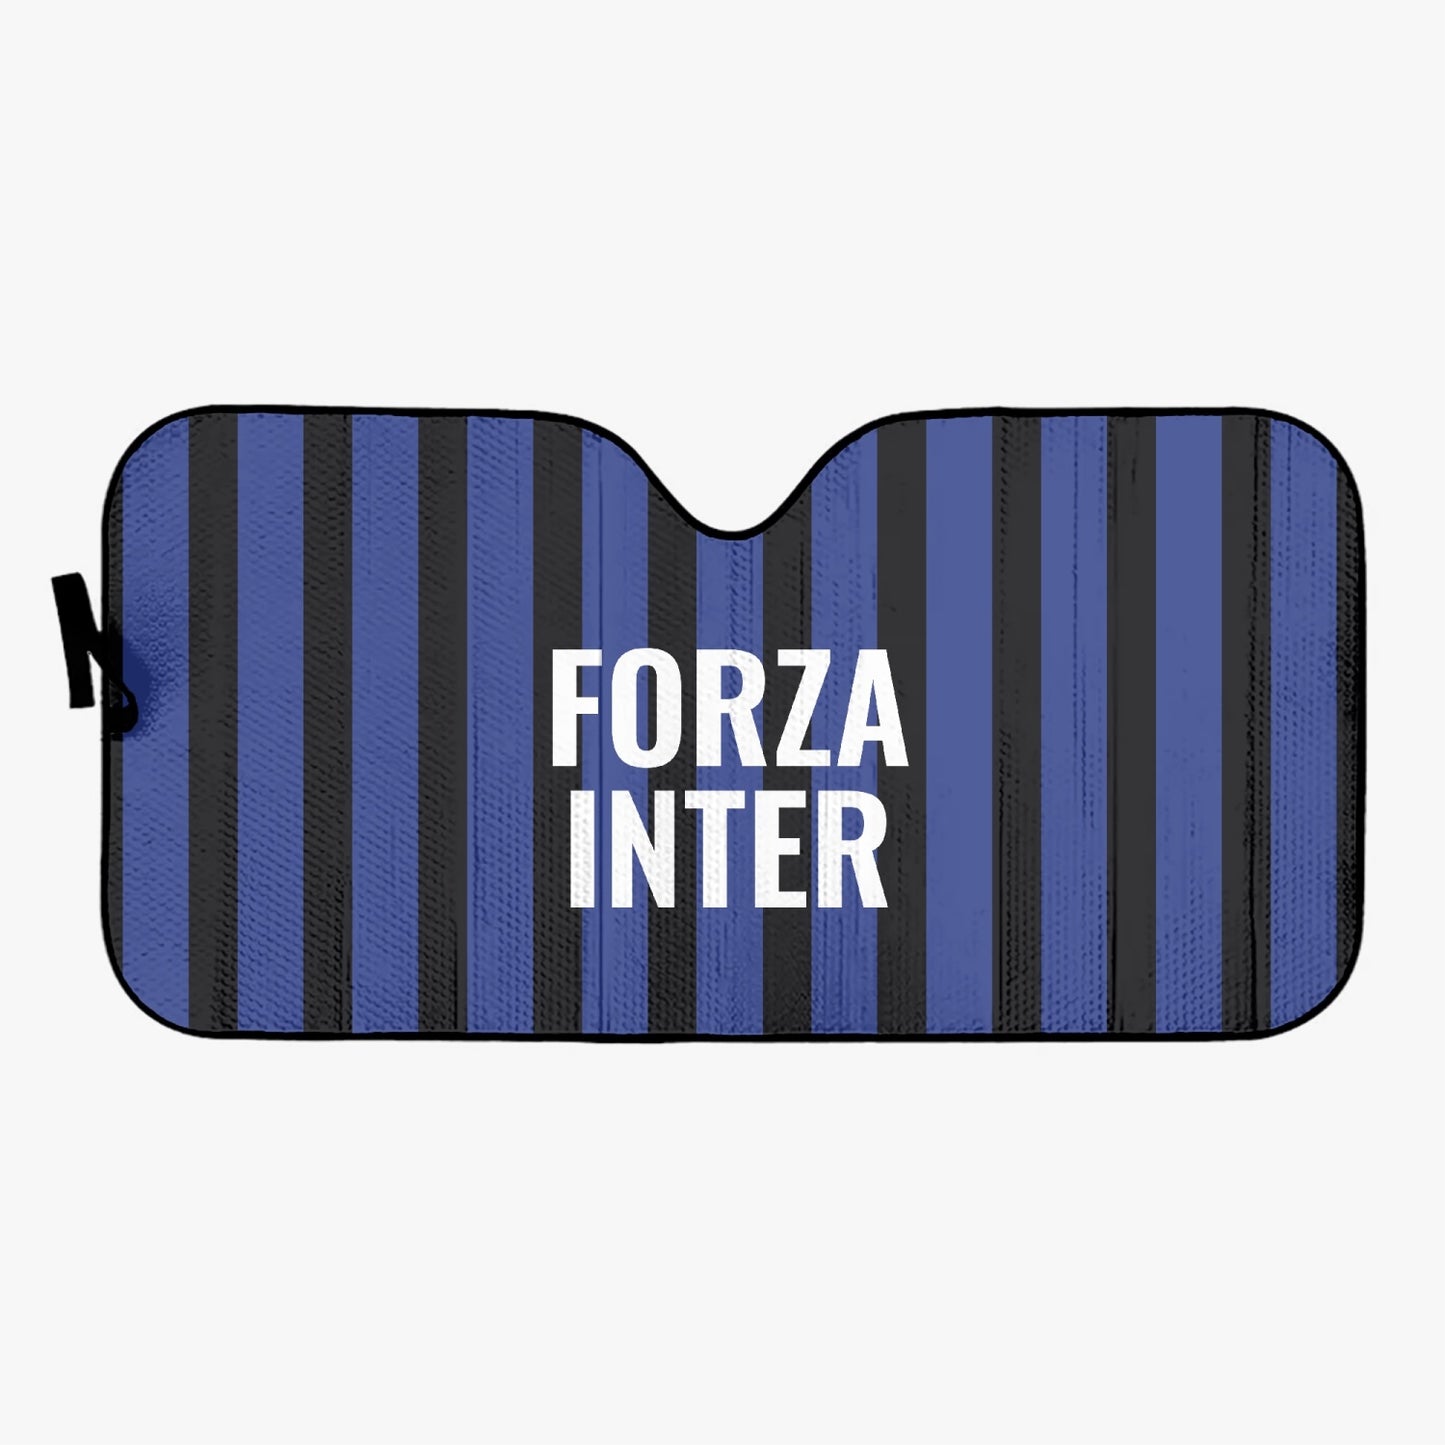 Forza Inter - Tendina parasole per auto